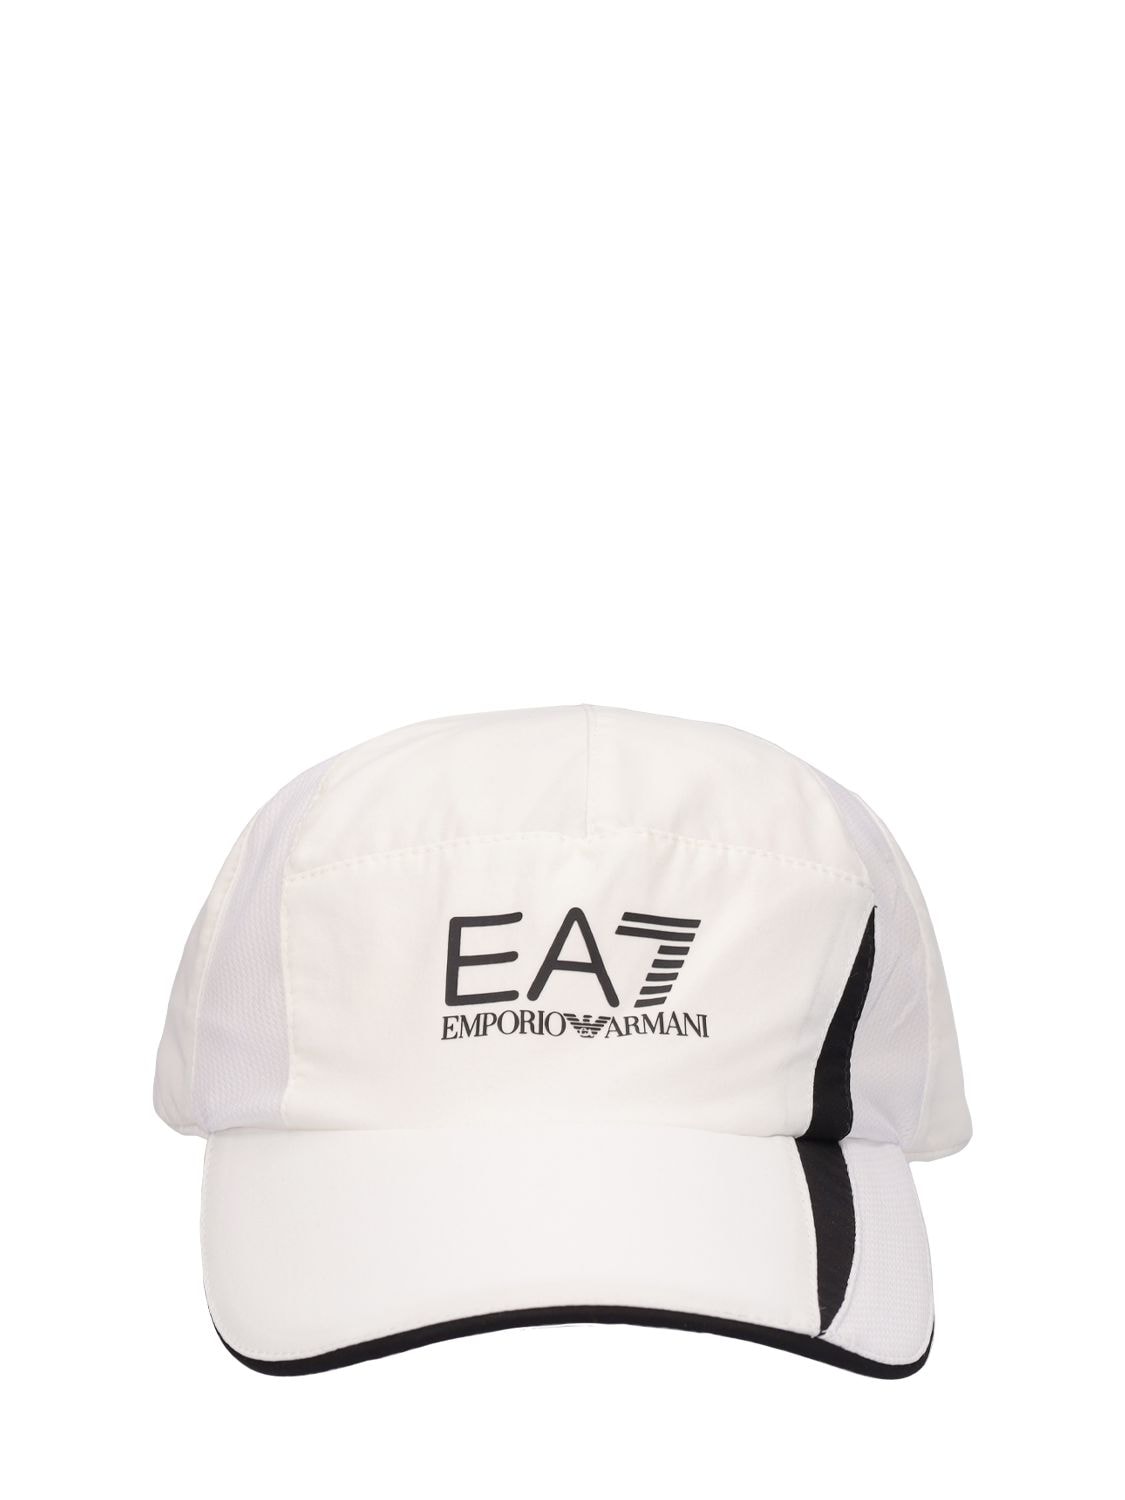 Tennis Pro Mesh Cap - EA7 EMPORIO ARMANI - Modalova